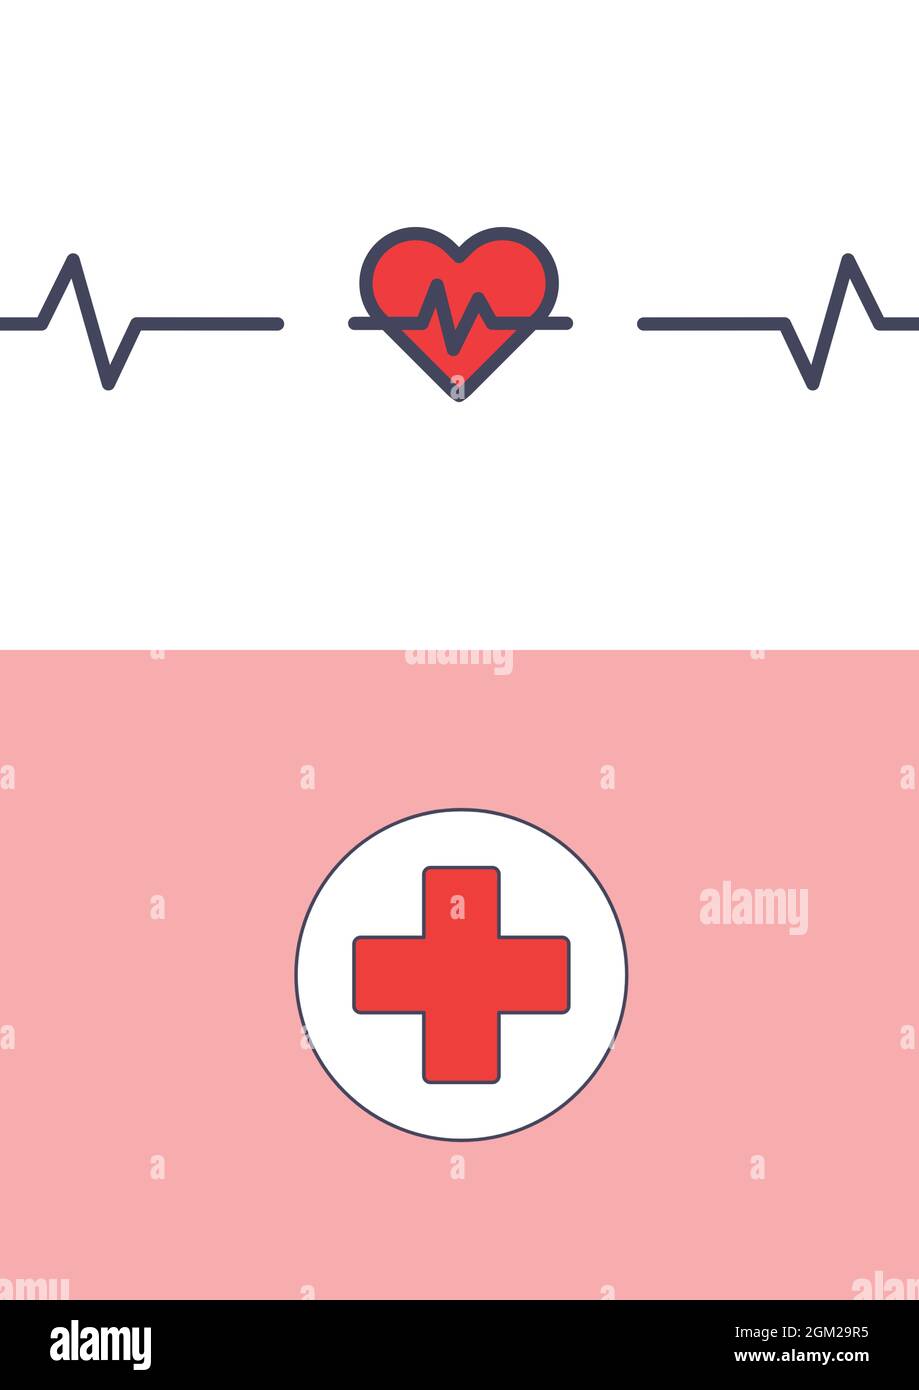 Image générée numériquement du rythme cardiaque et du symbole médical sur fond blanc et rose Banque D'Images